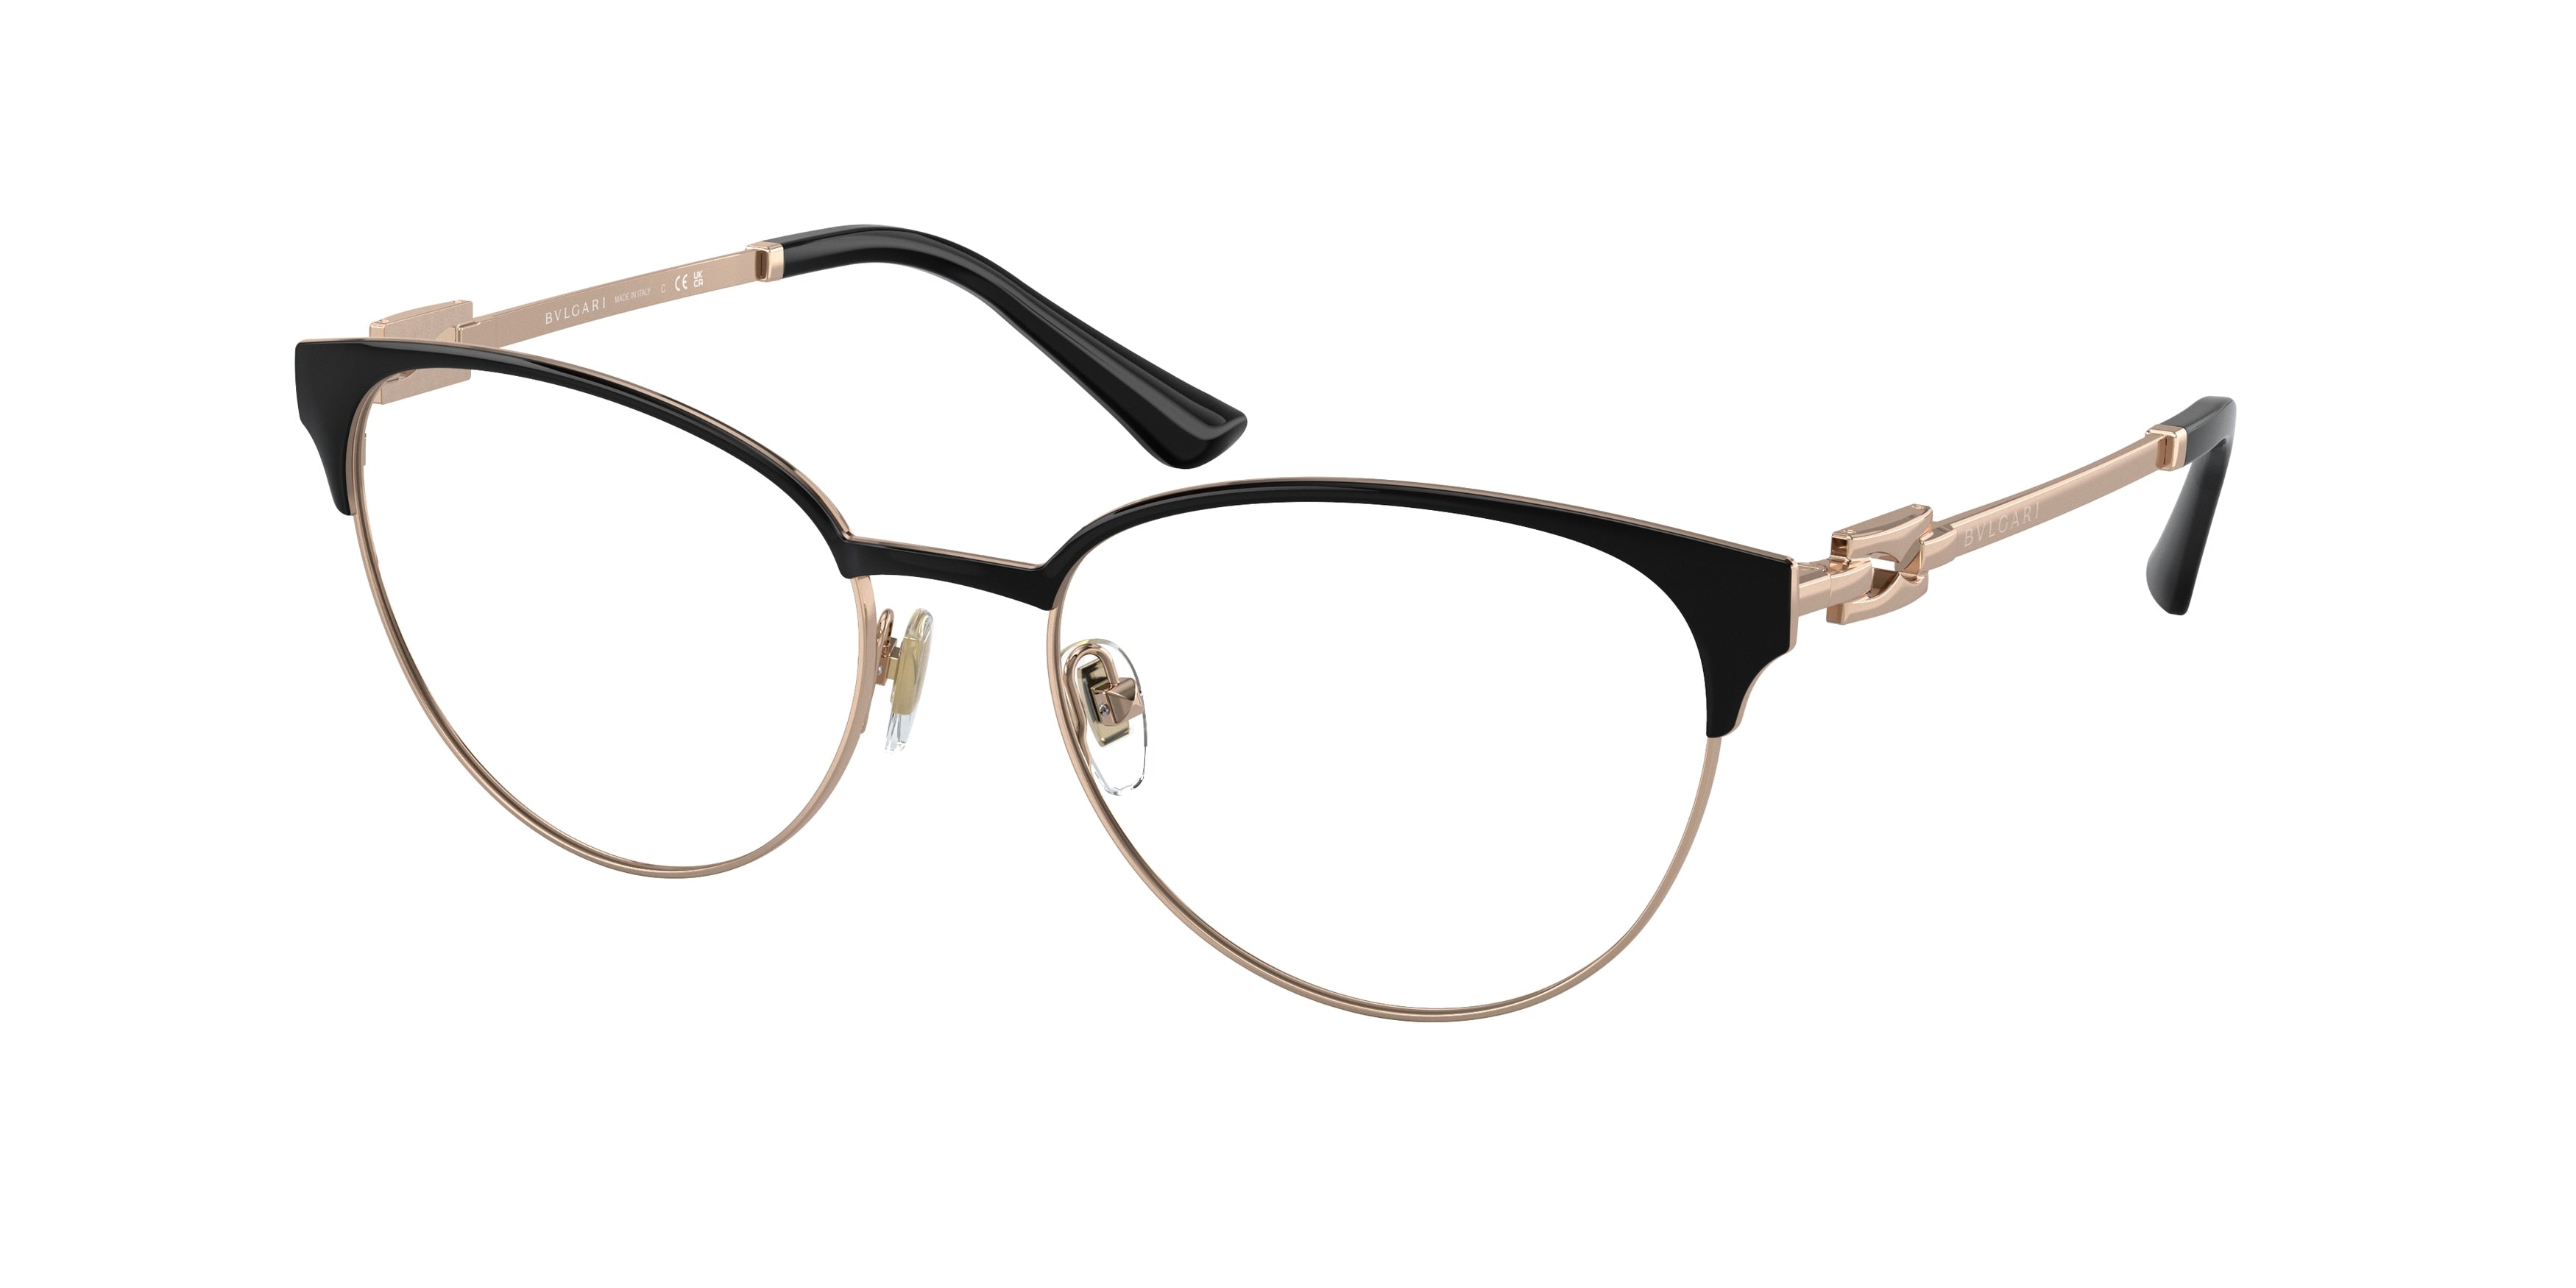 Bvlgari BV2247 Cat Eye Eyeglasses  2023-Pink Gold/Black 54-140-17 - Color Map Pink